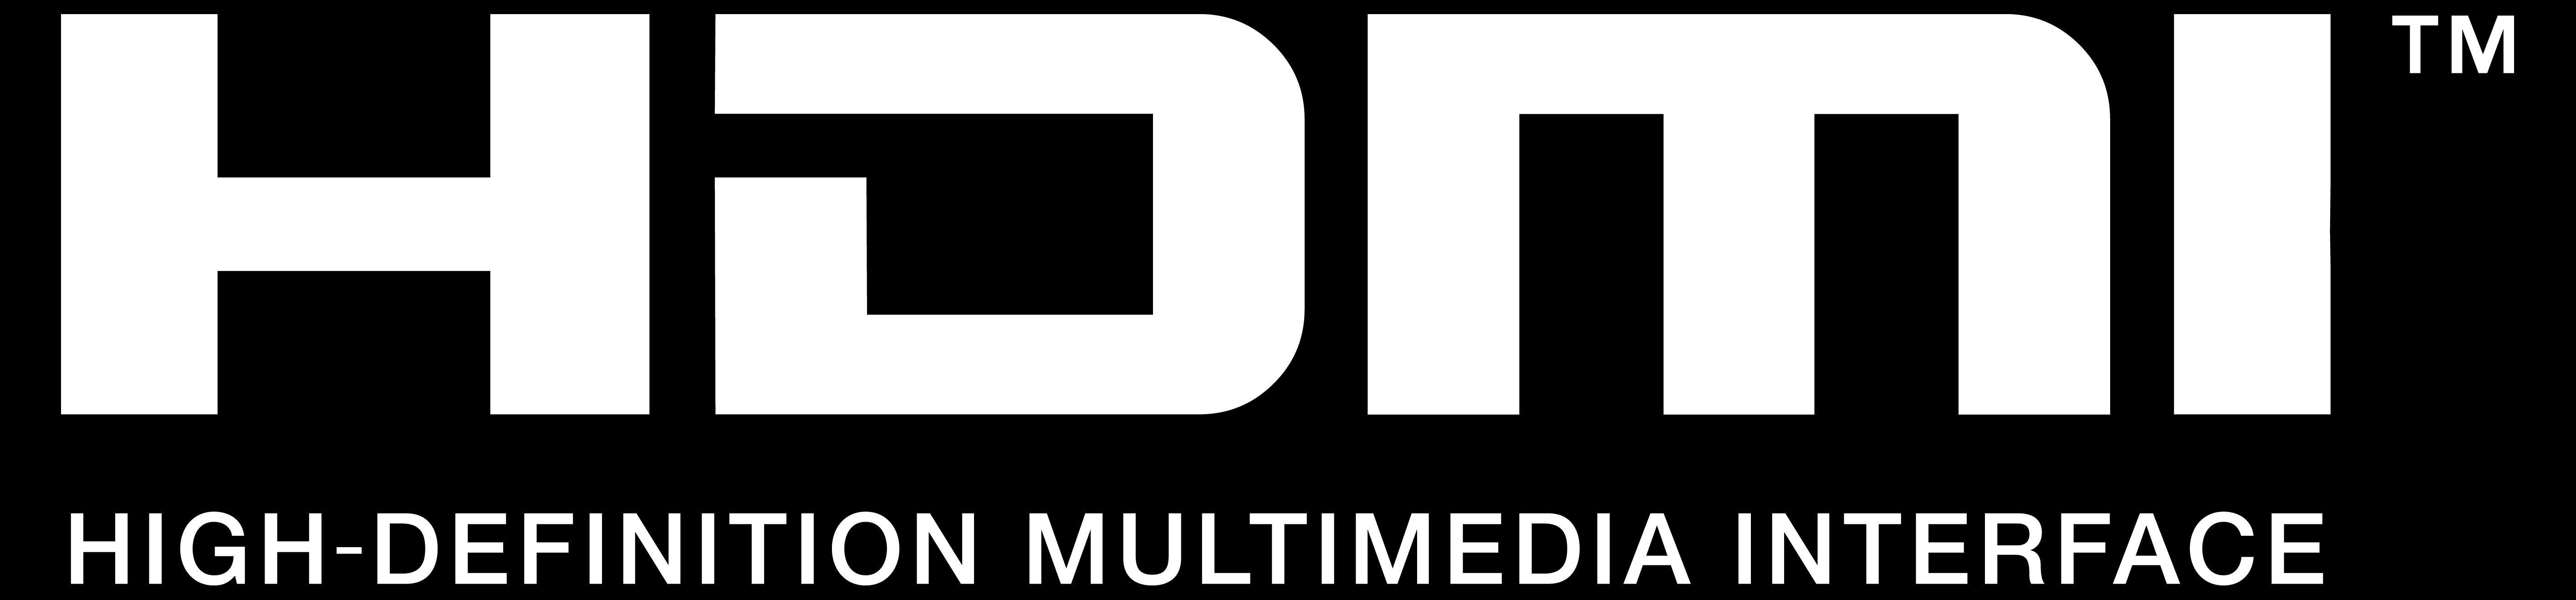 HDMI Logo - Hdmi Logos